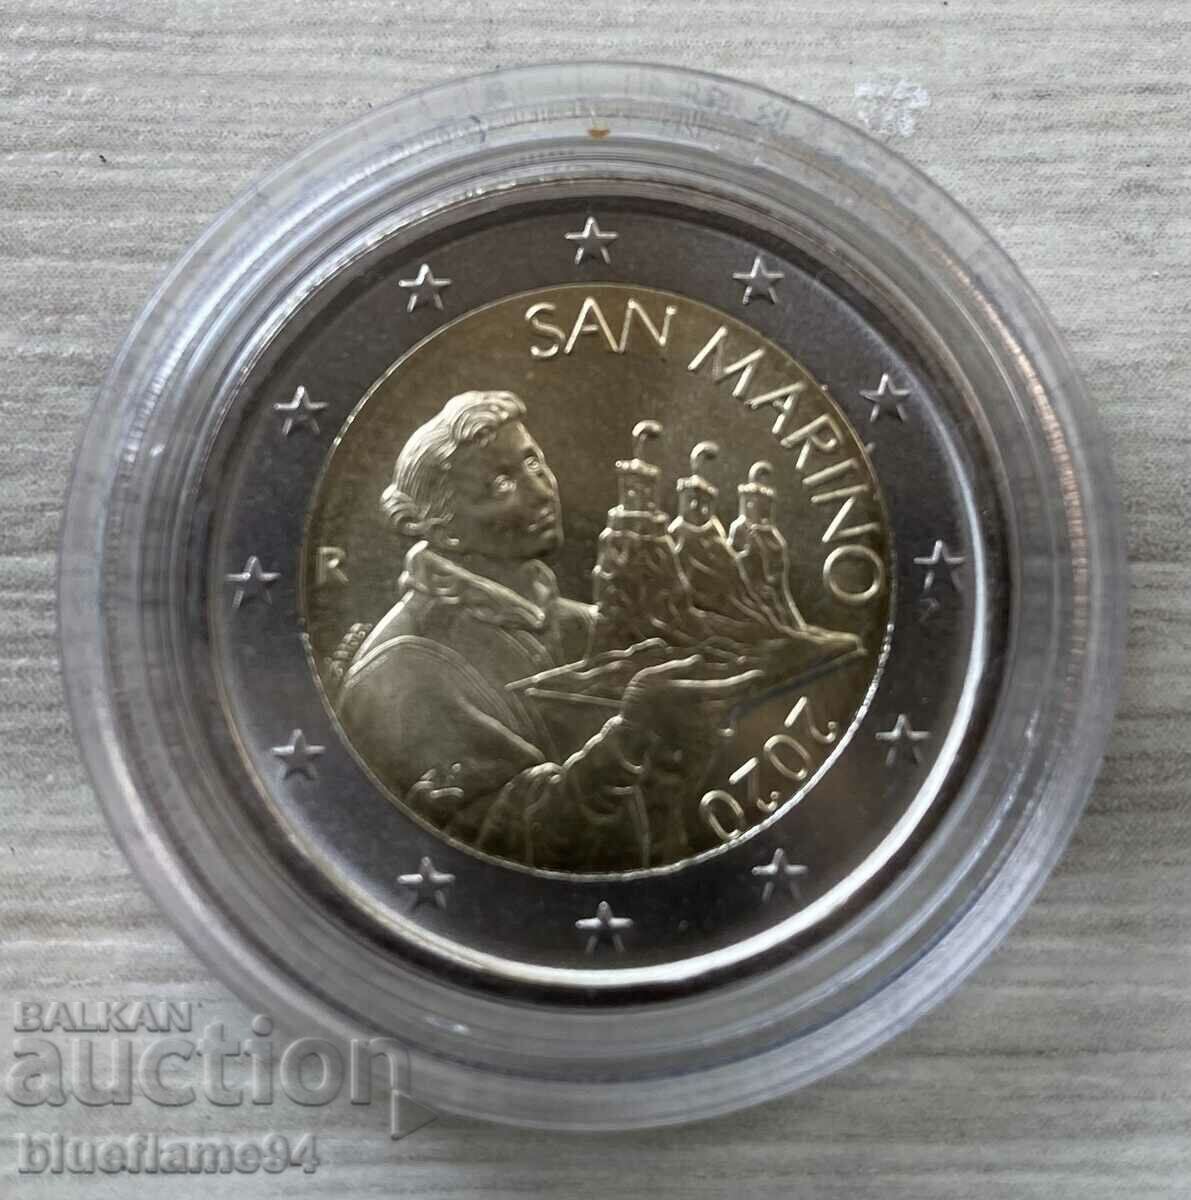 2 Ευρώ Σαν Μαρίνο 2020